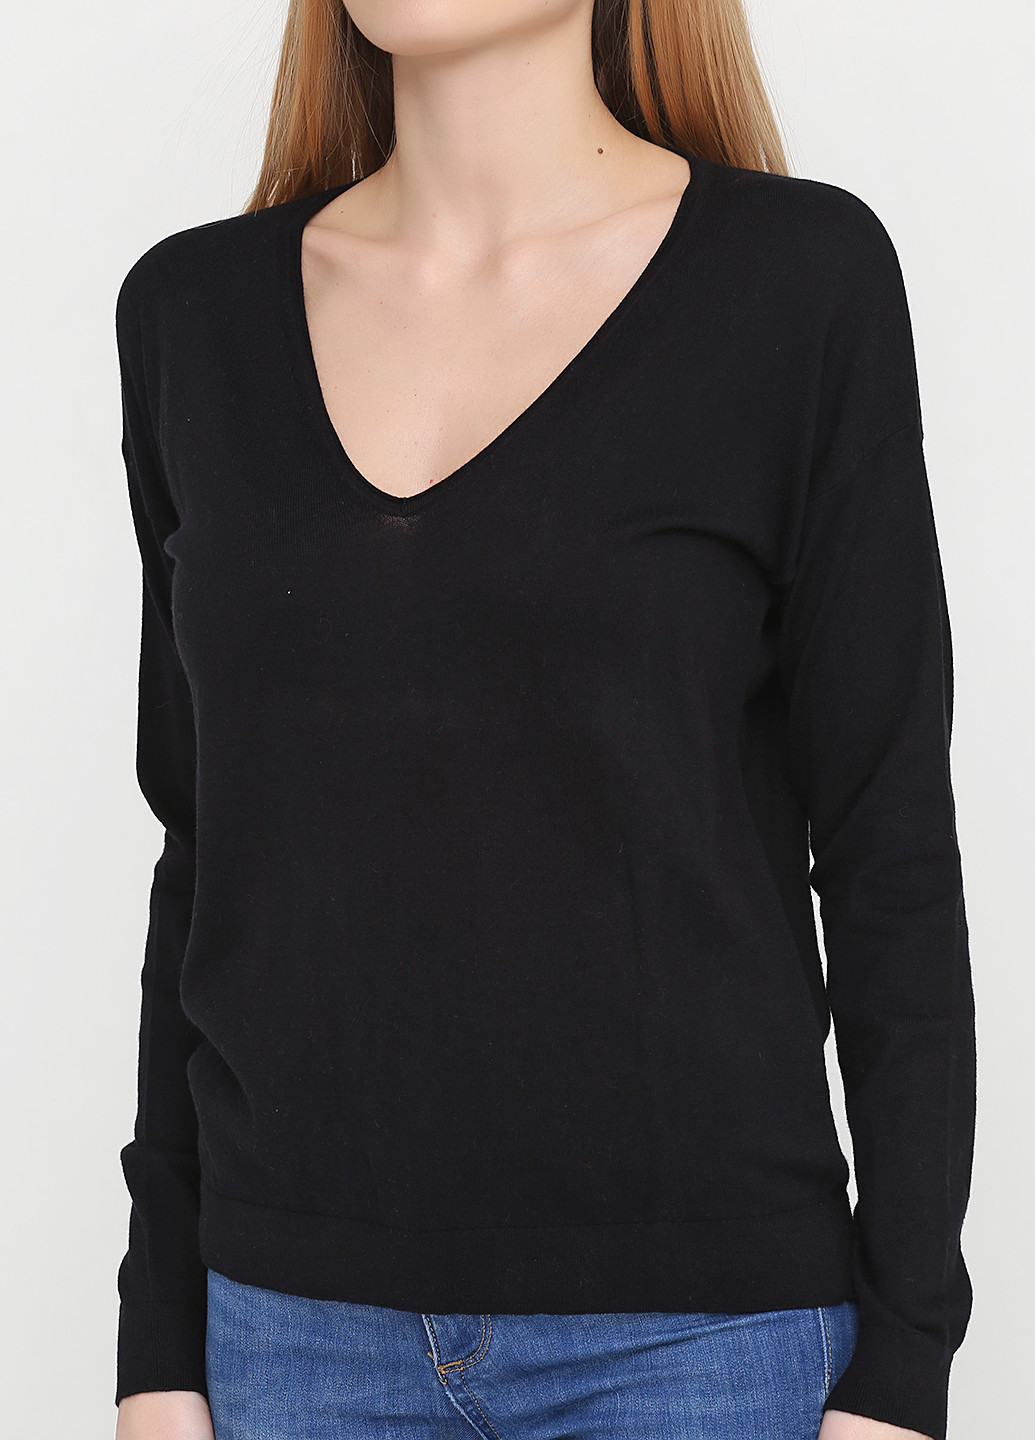 Черный демисезонный пуловер пуловер United Colors of Benetton